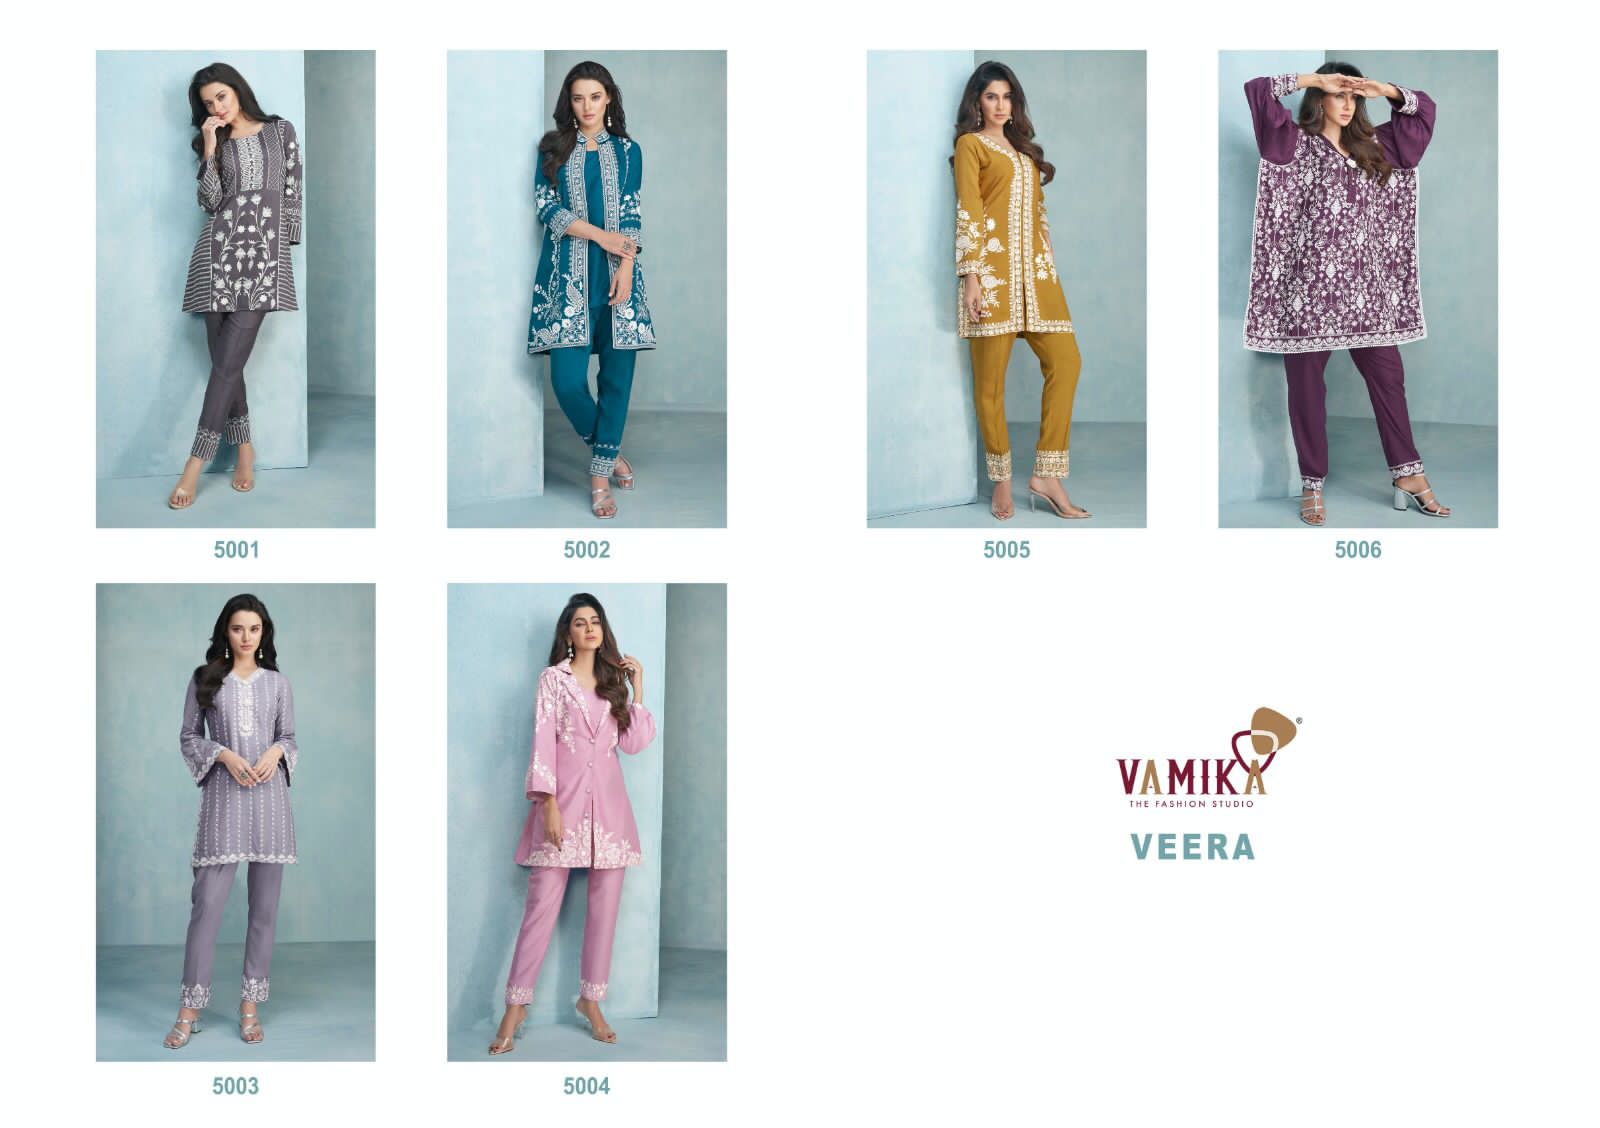 Vamika Veera collection 2